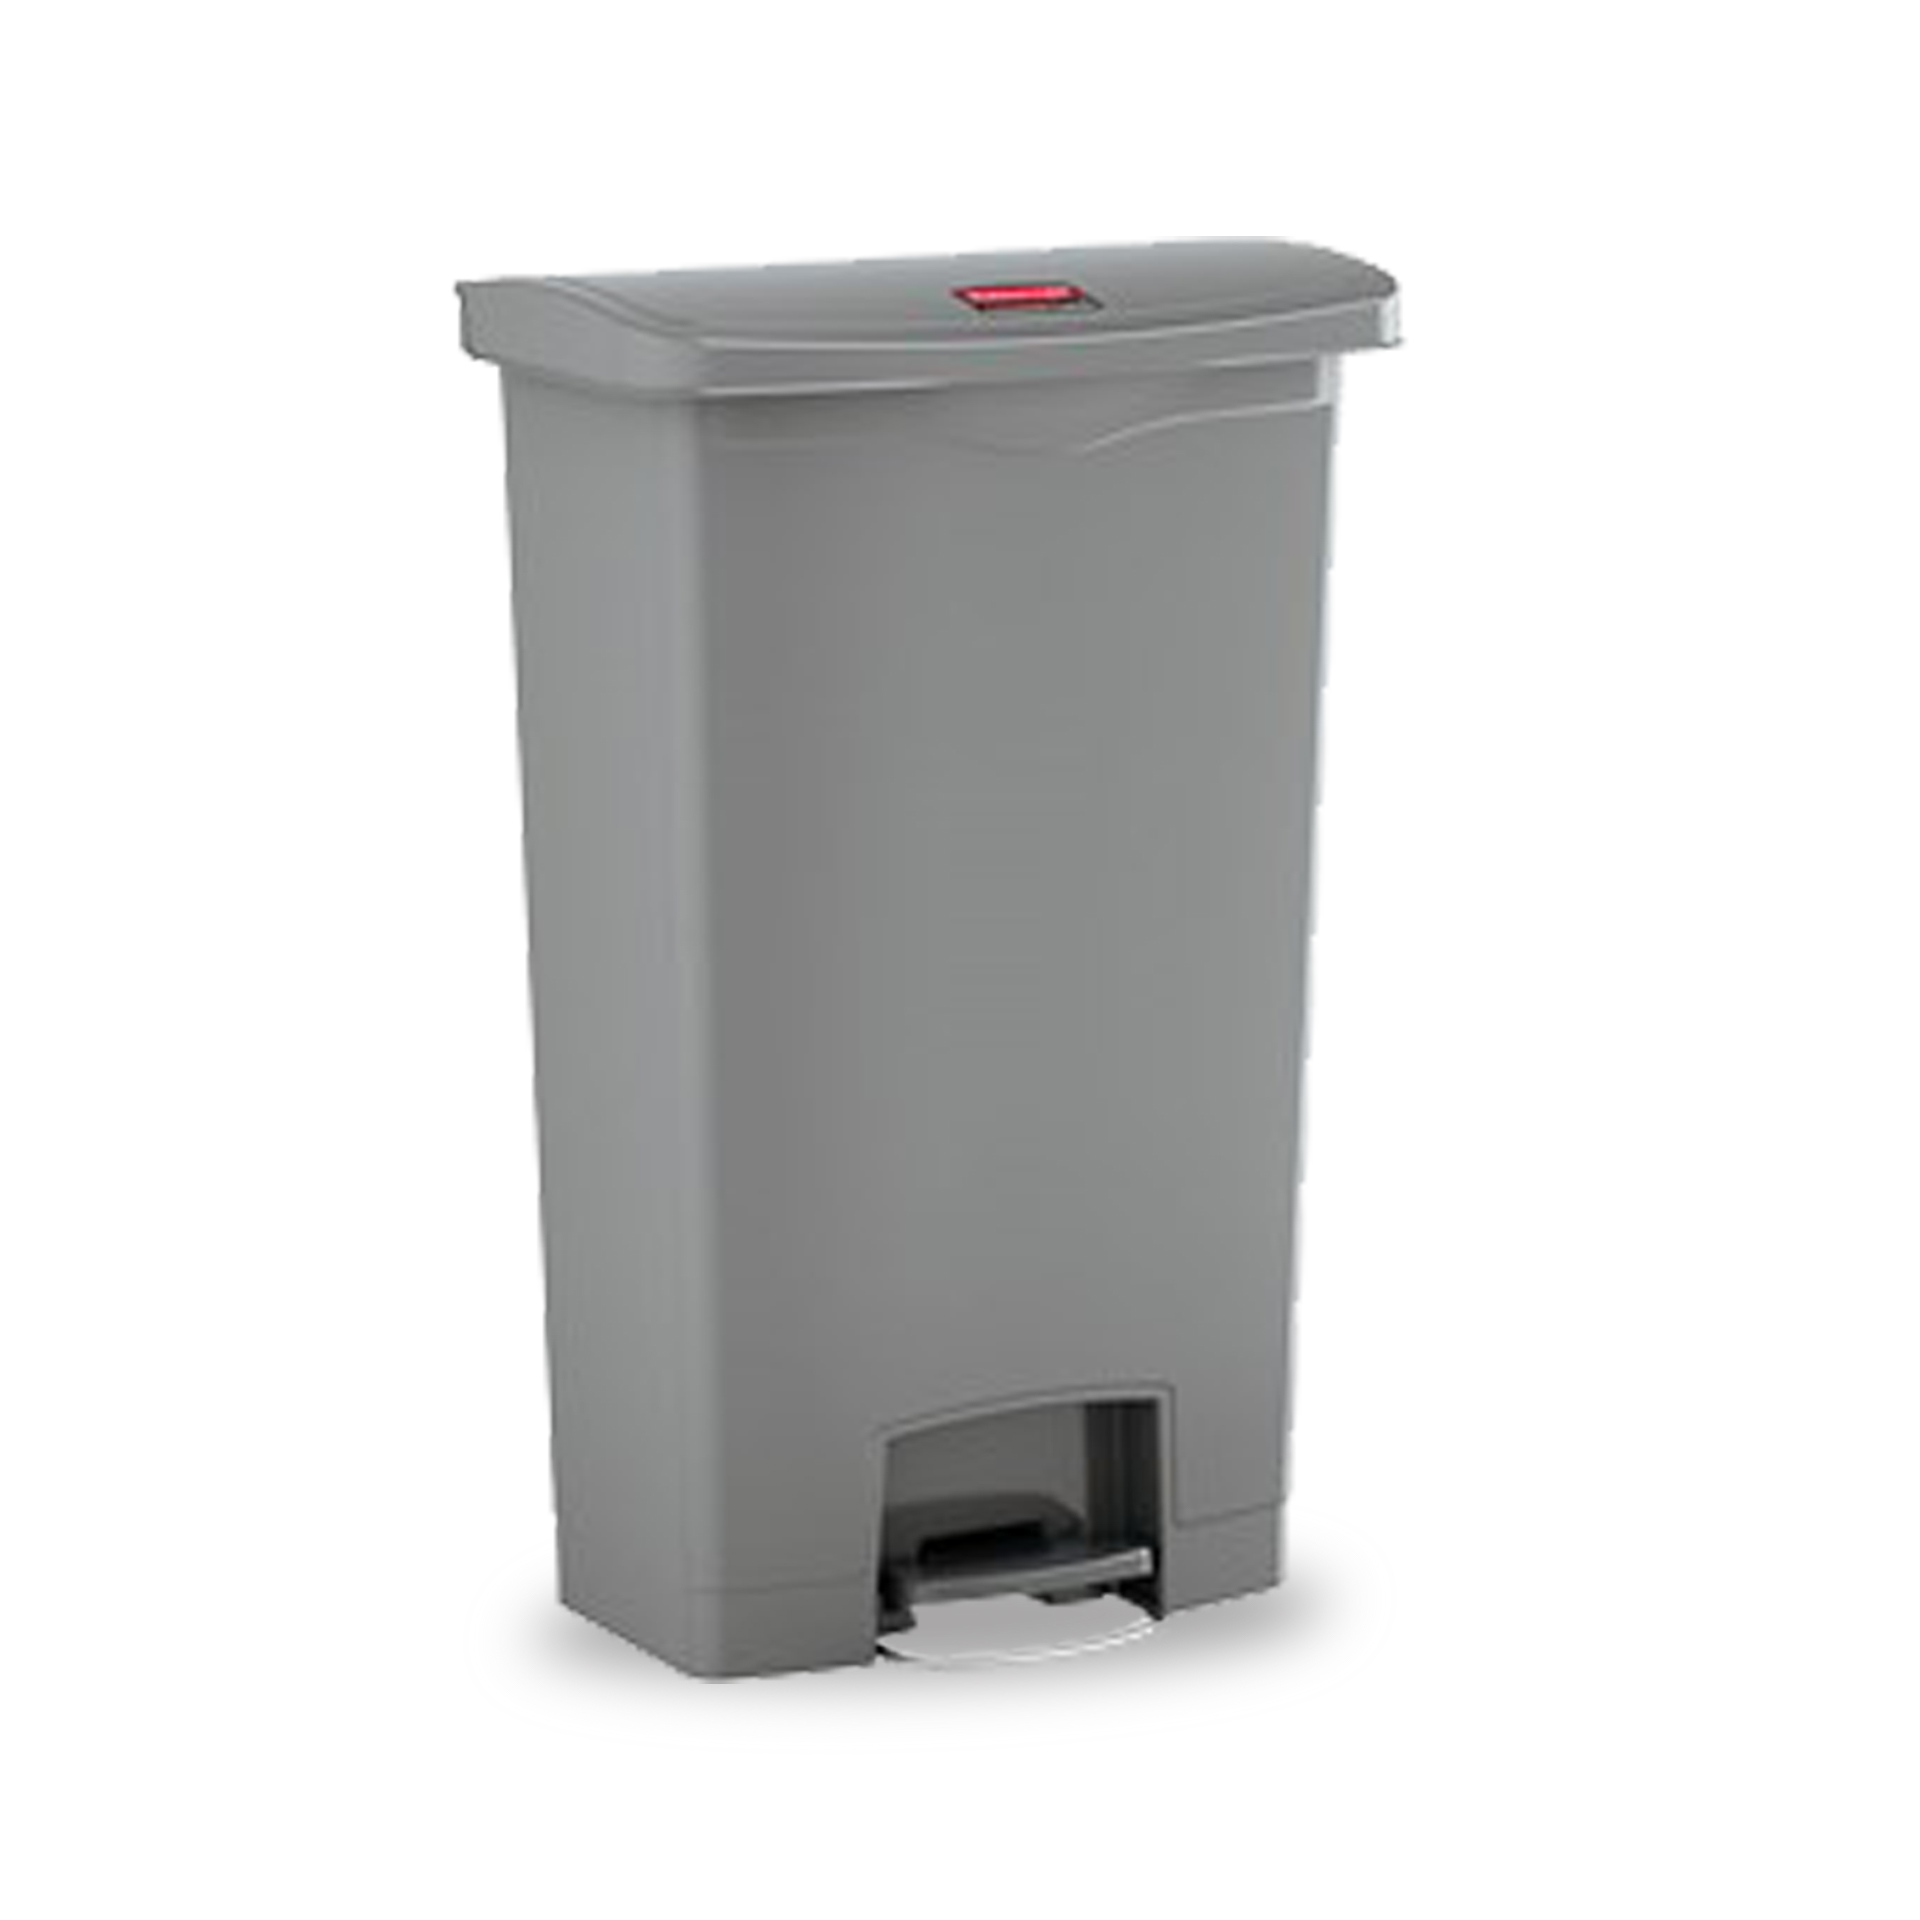 ถังขยะแบบเท้าเหยียบ Slim Jim® Step-On Container ขนาด 30 ลิตร สีเทา